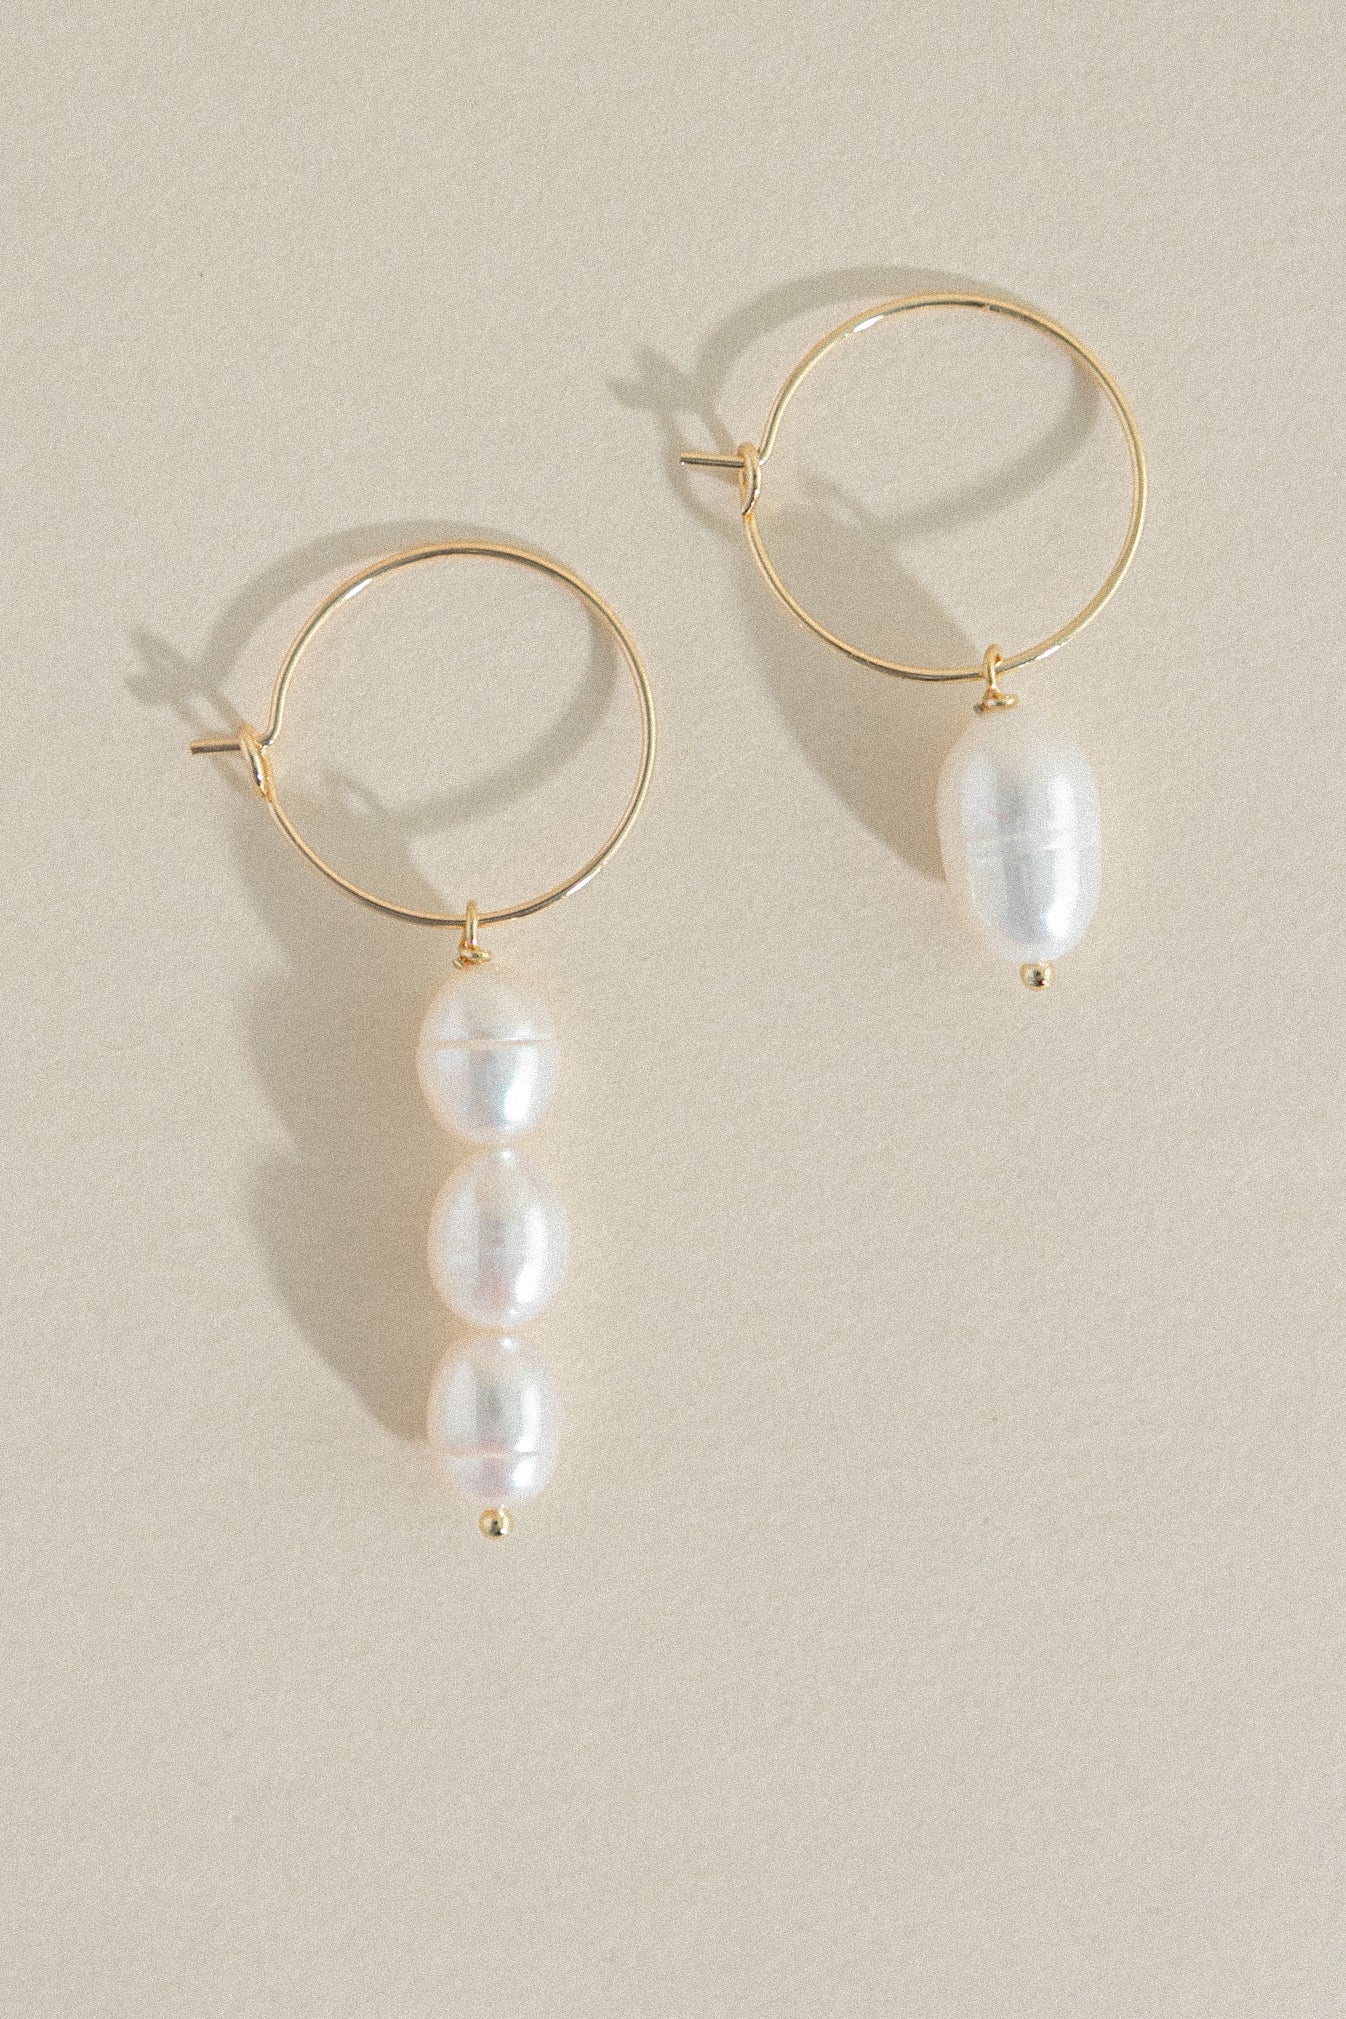 Bon Temps_Hoop + Pearls Earrings |       